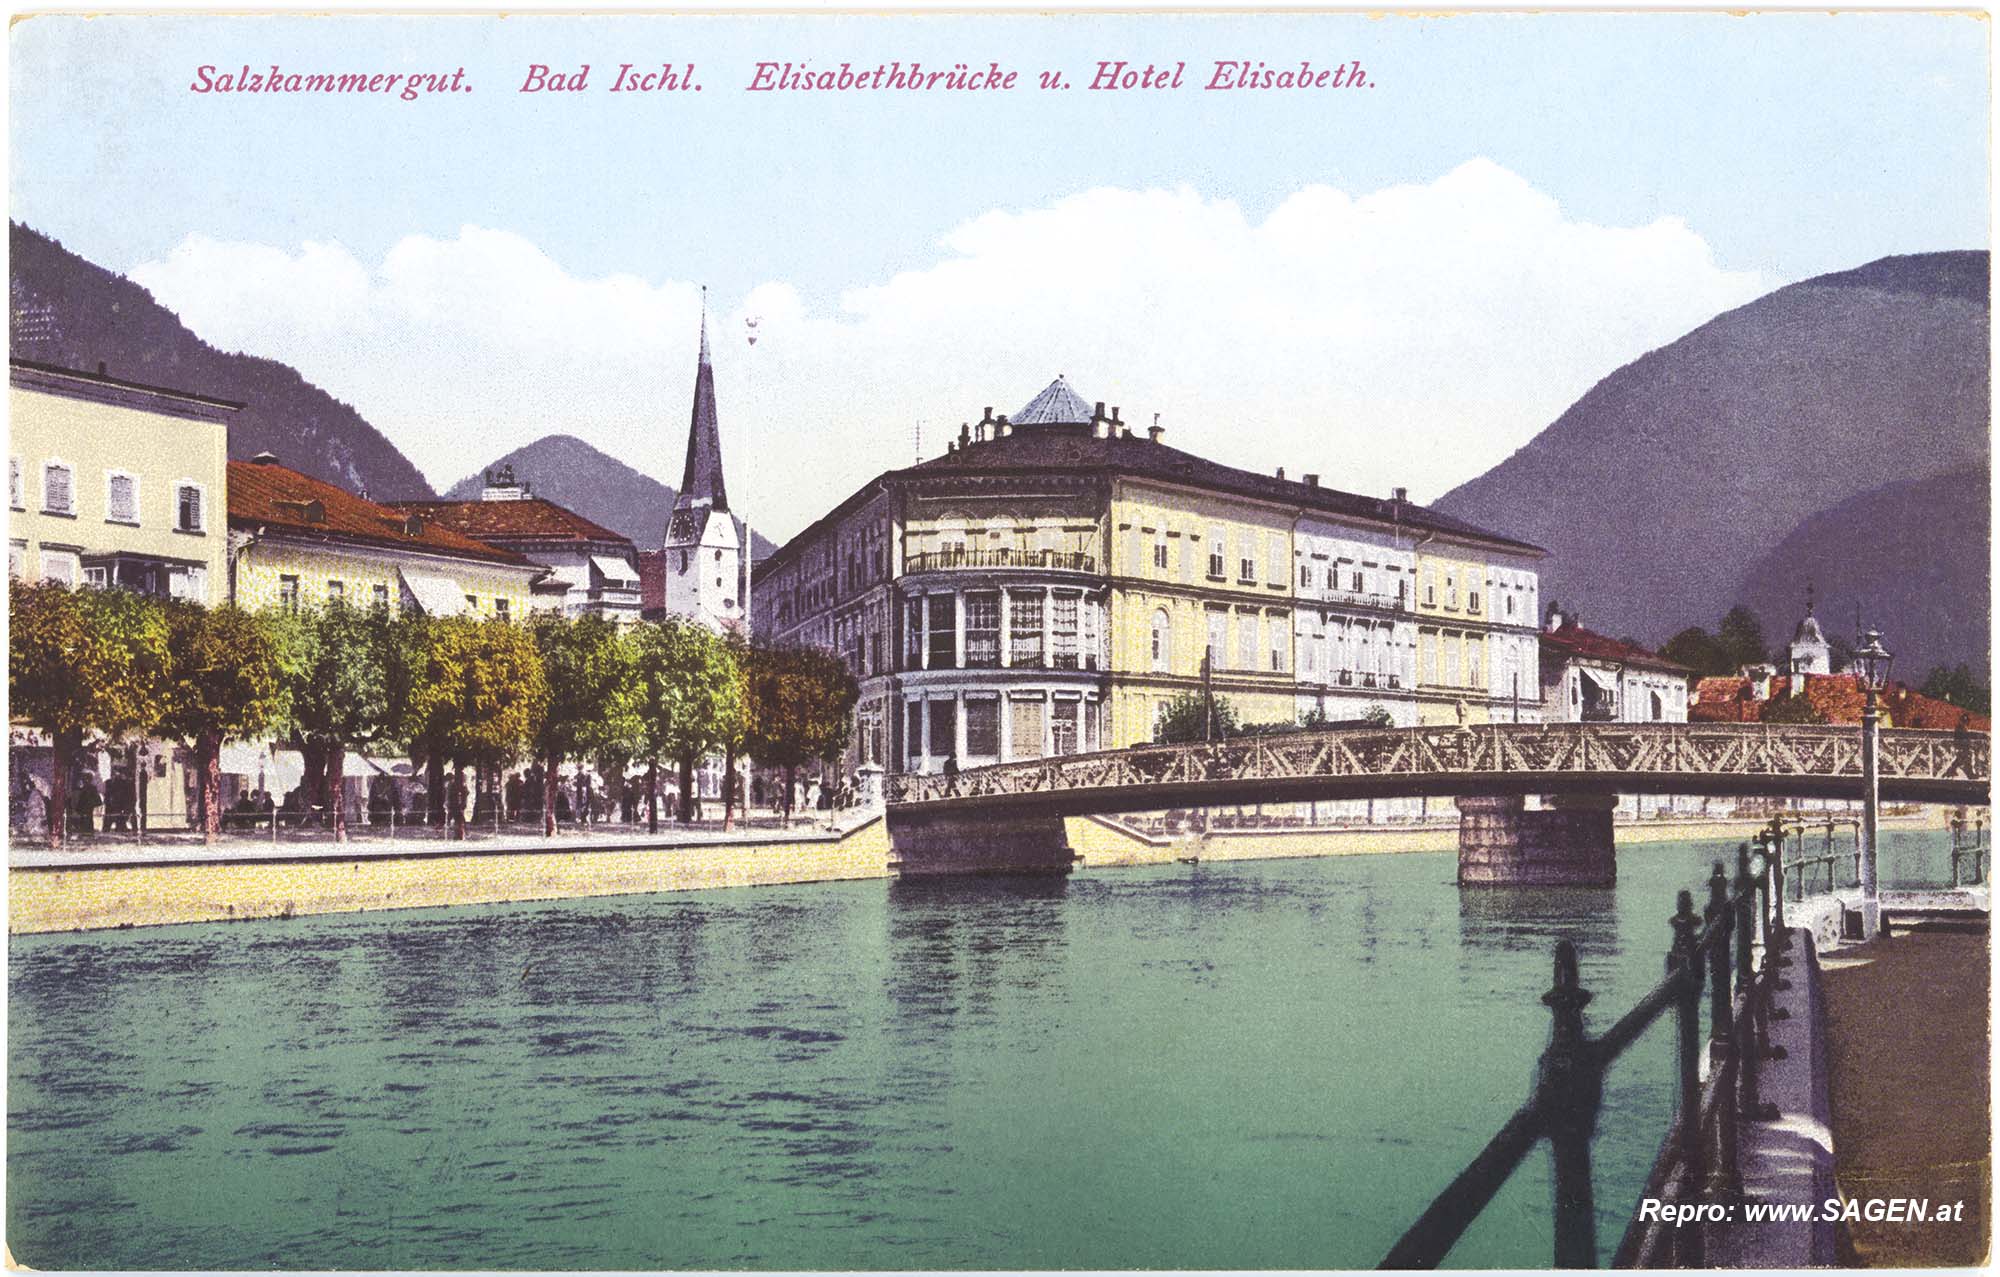 Salzkammergut. Bad Ischl. Elisabethbrücke u. Hotel Elisabeth.